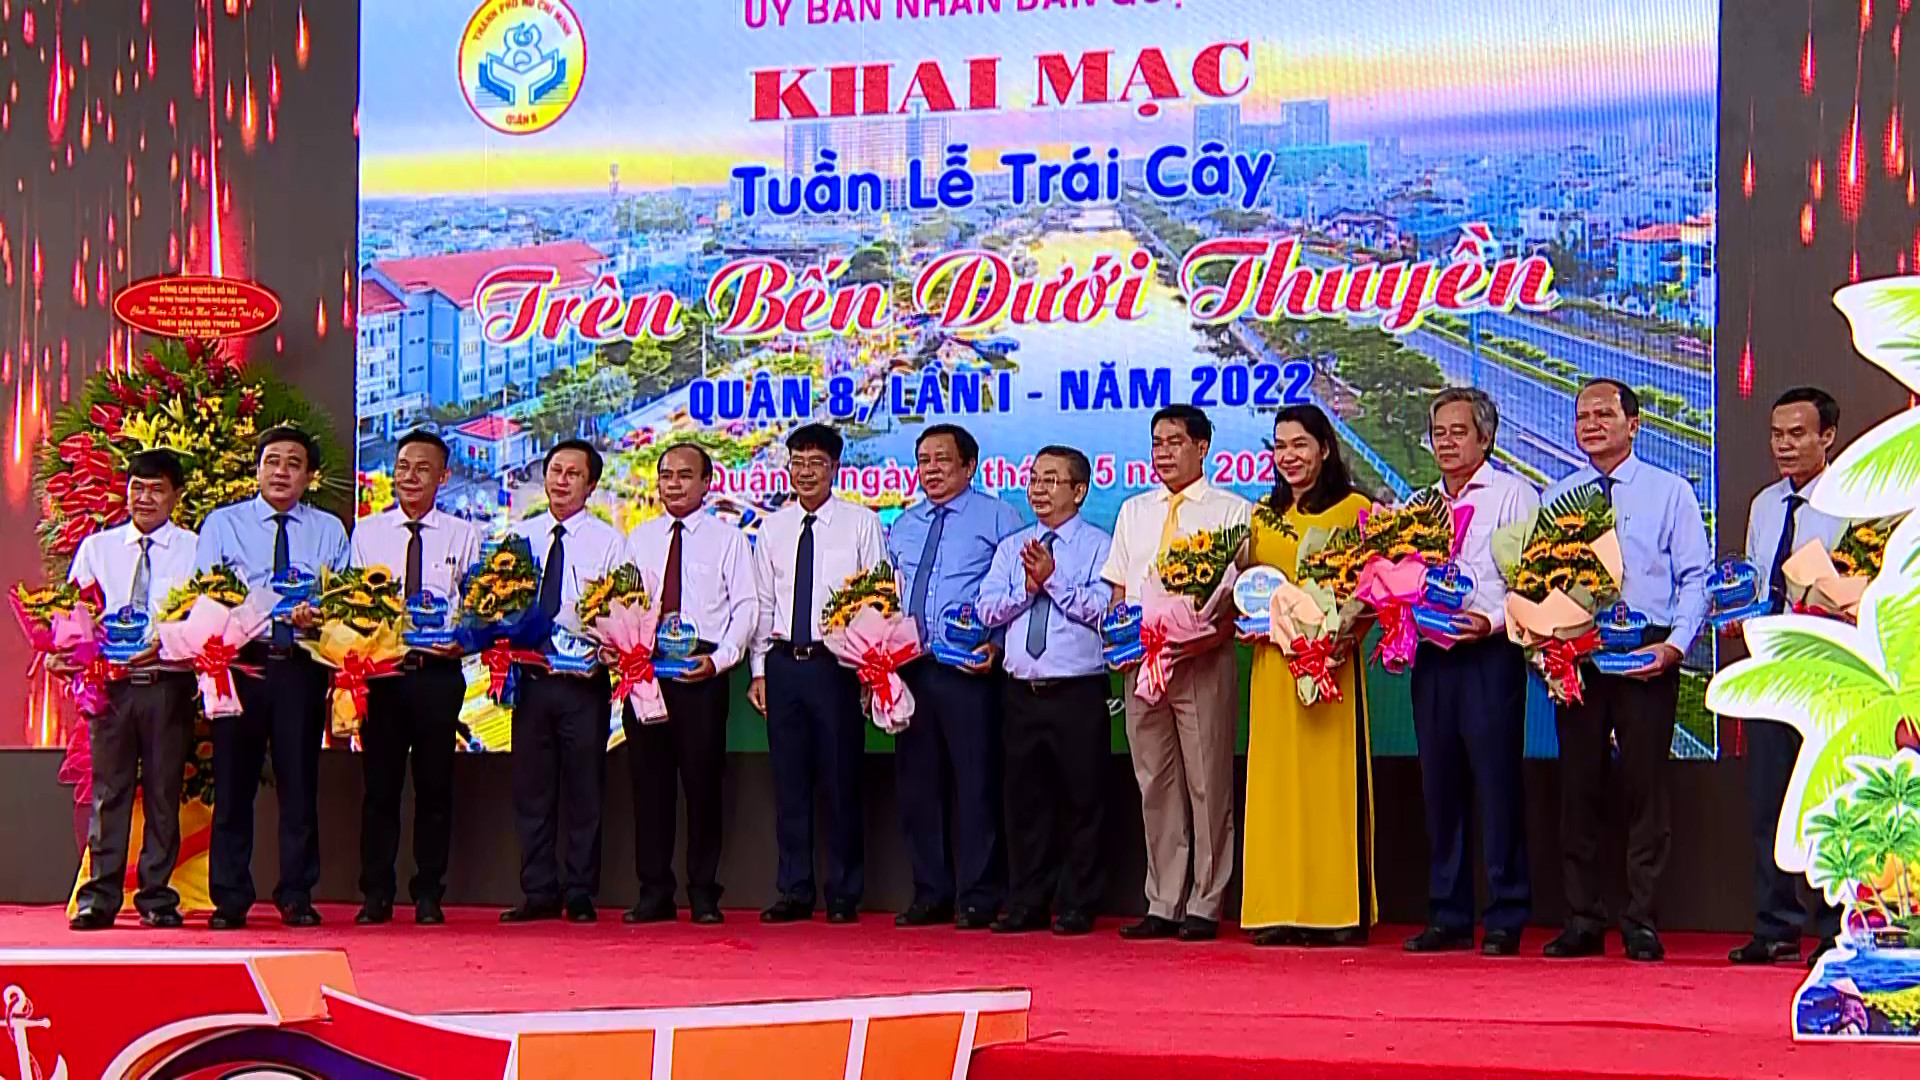 Vĩnh Long tham gia Tuần lễ trái cây “Trên bến dưới thuyền” lần 1 năm 2022 tại Quận 8, Thành phố Hồ Chí Minh